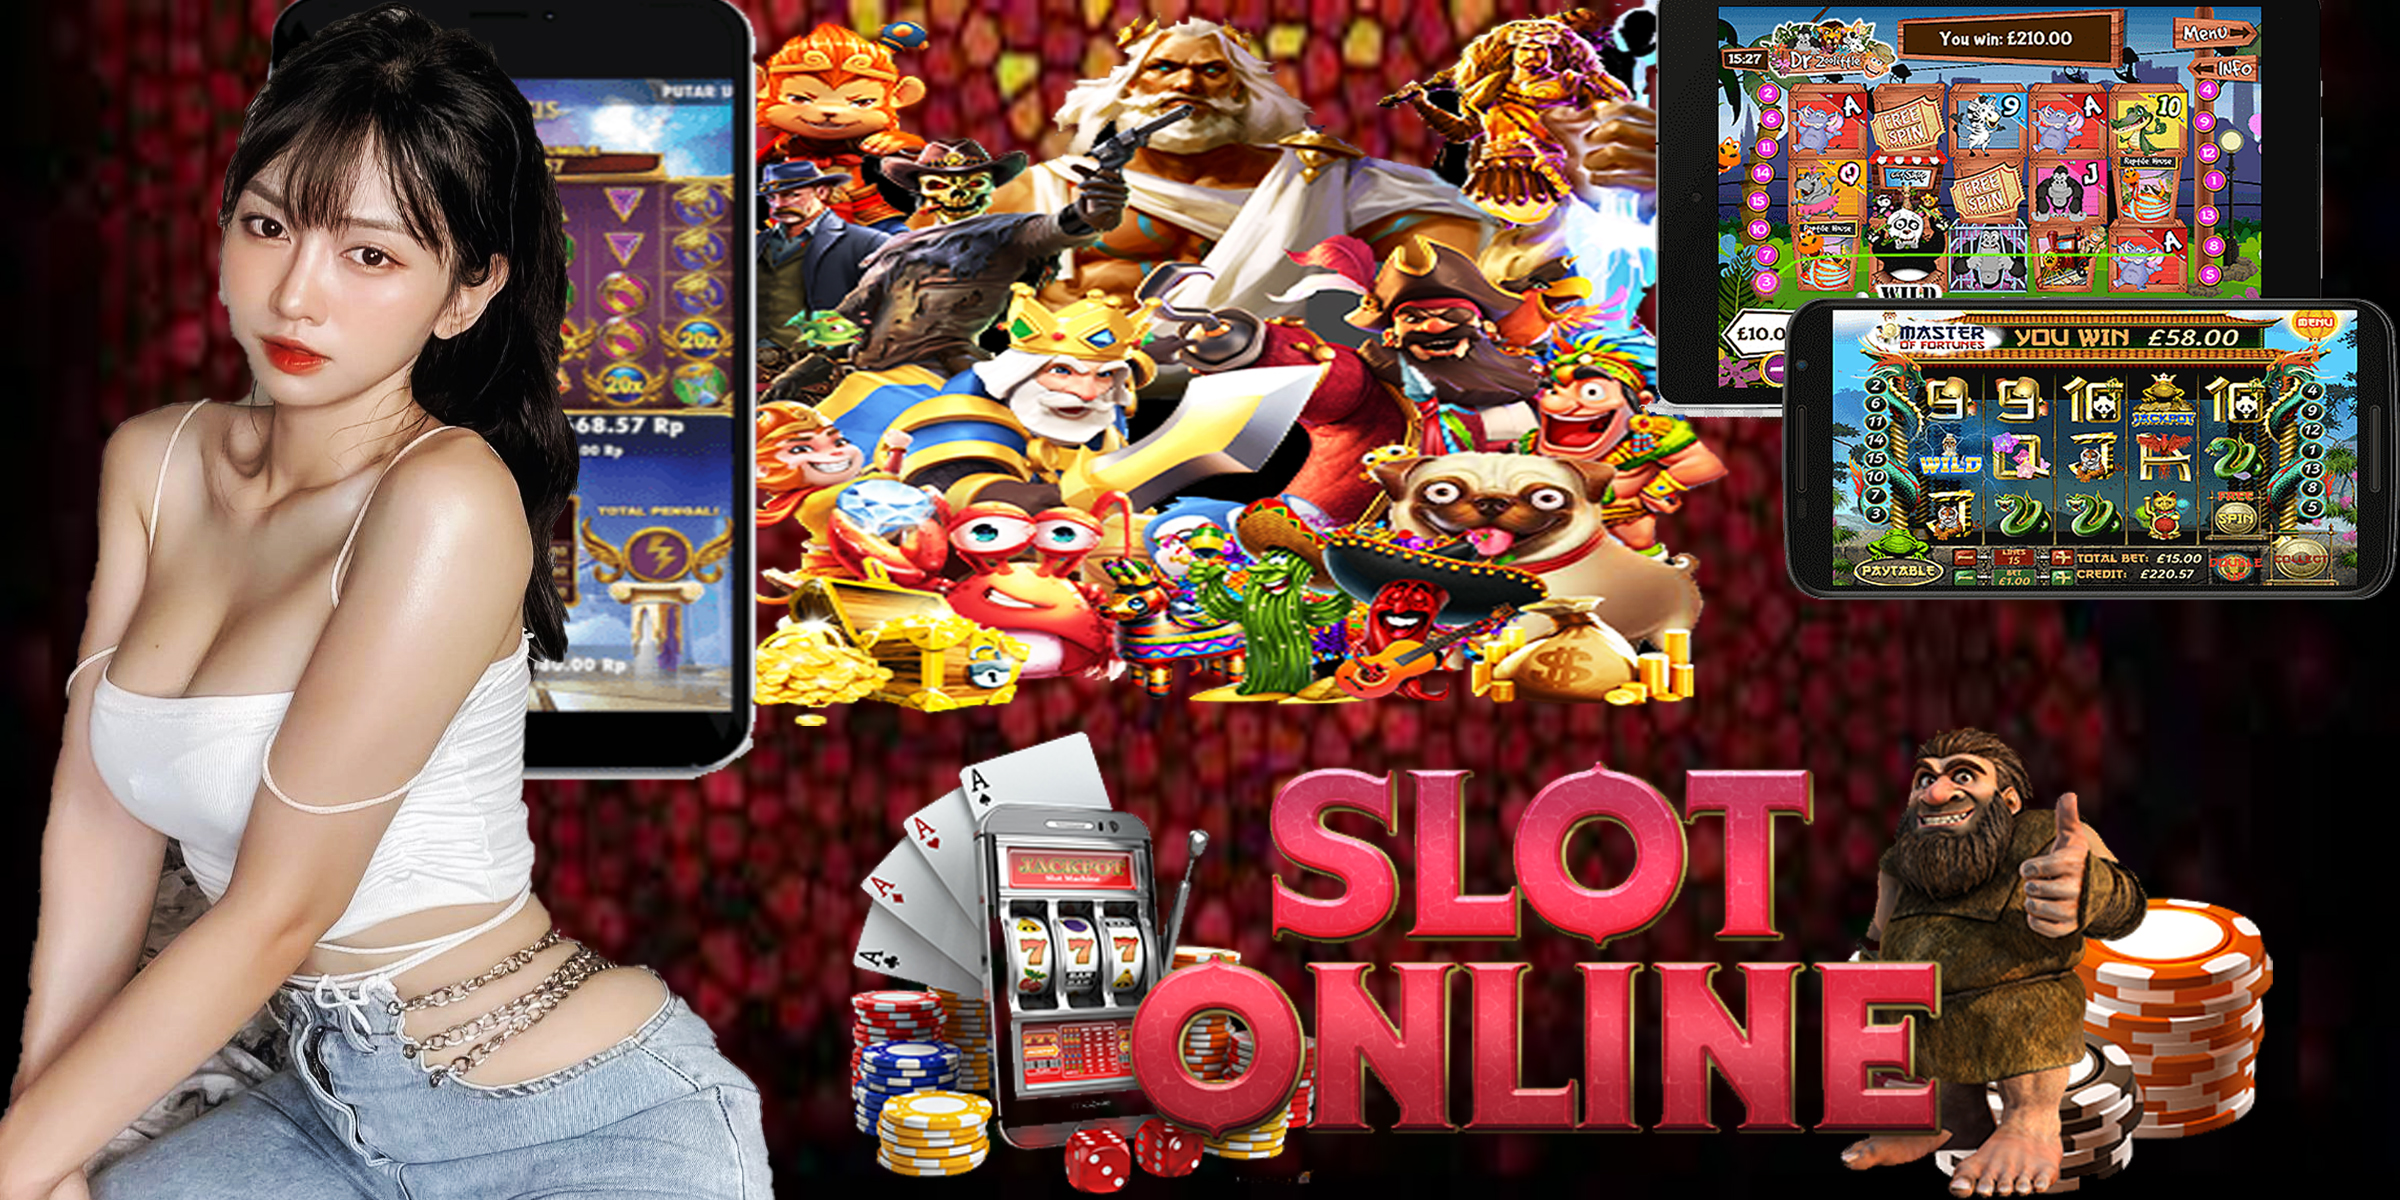 Permainan Slot Online Rajacuan69 Populer Dengan Kemenangan Besar